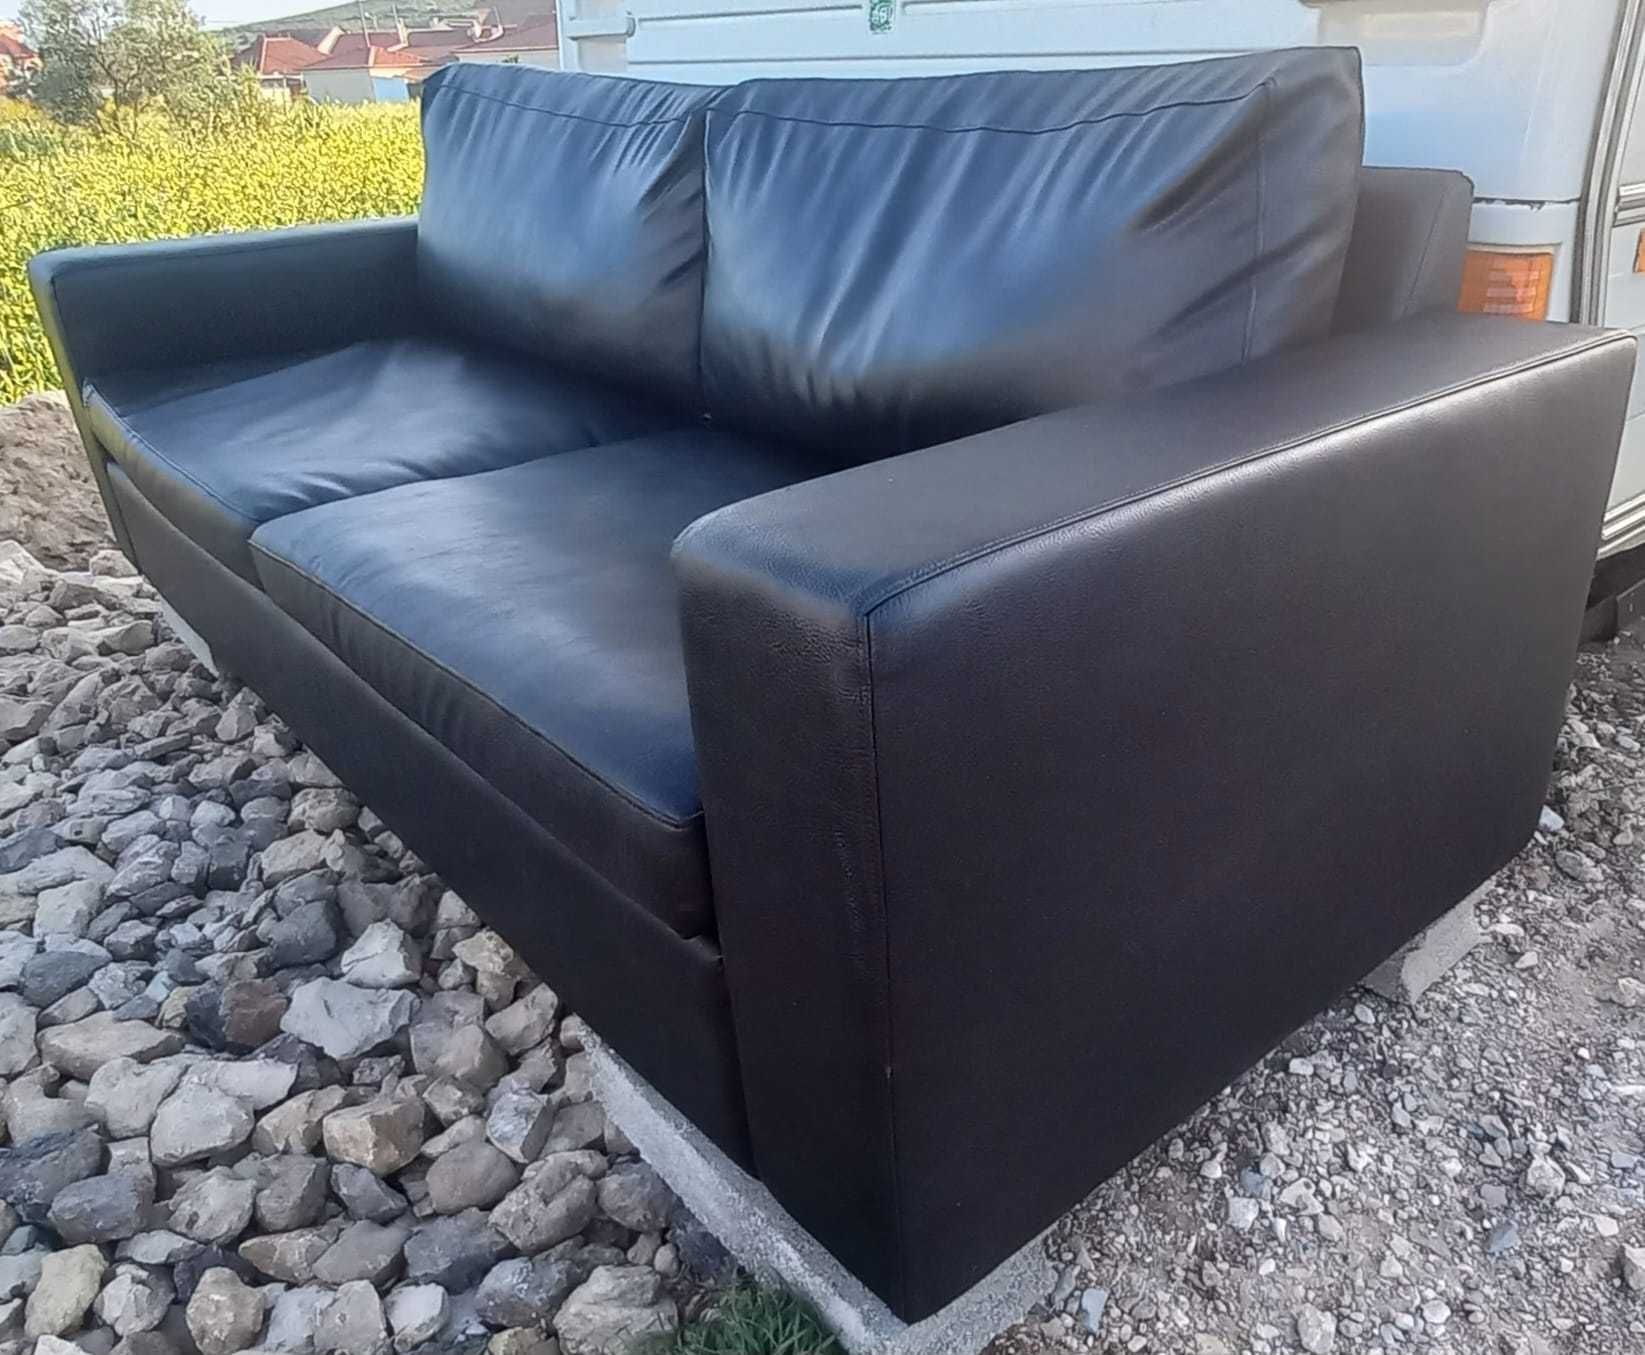 Lindo e confortável sofá preto.